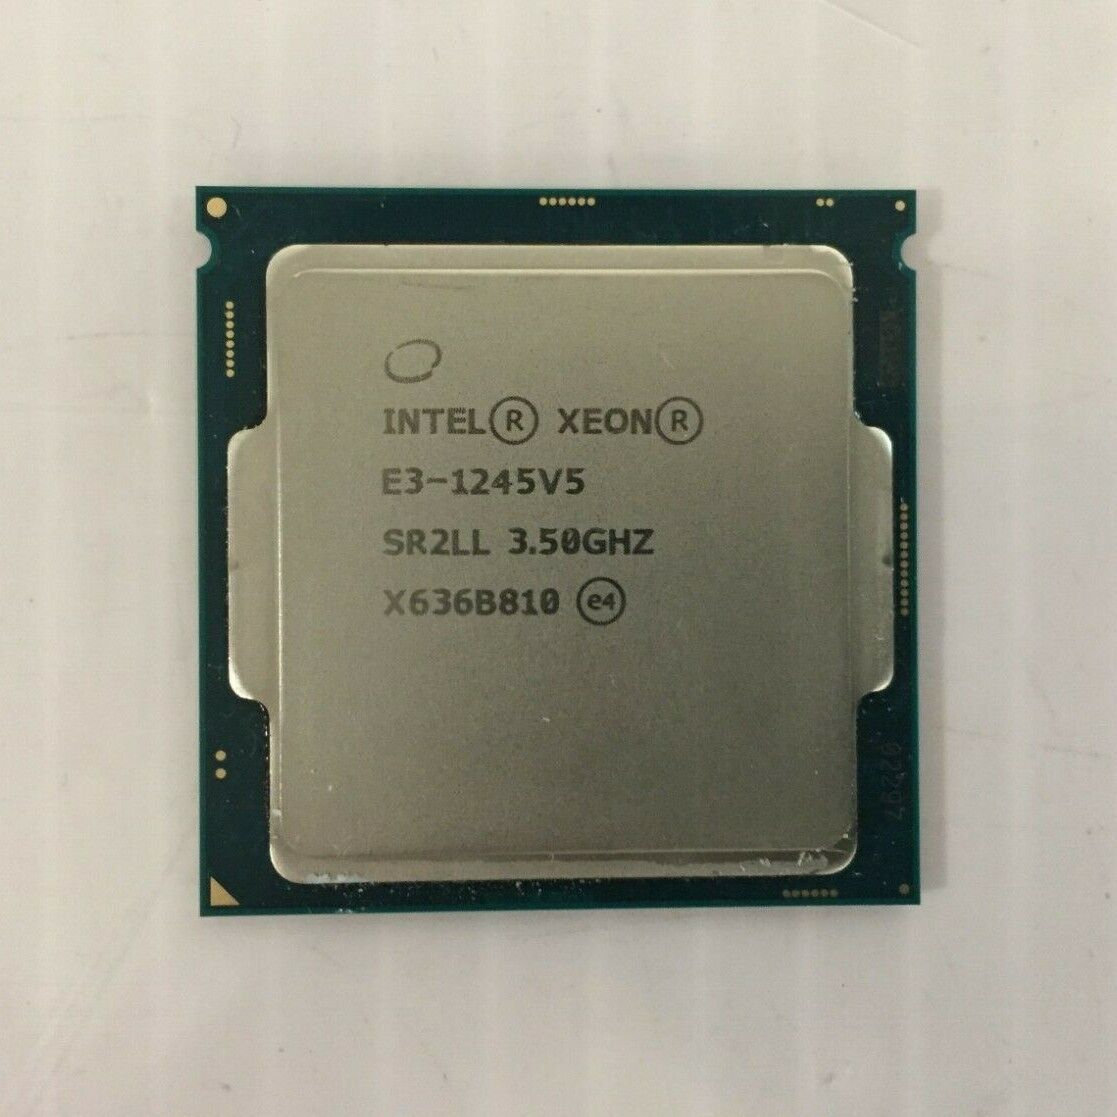 Intel Xeon E3-1245V5 LGA 1151 3.50GHz Desktop Processor / CPU SR2LL